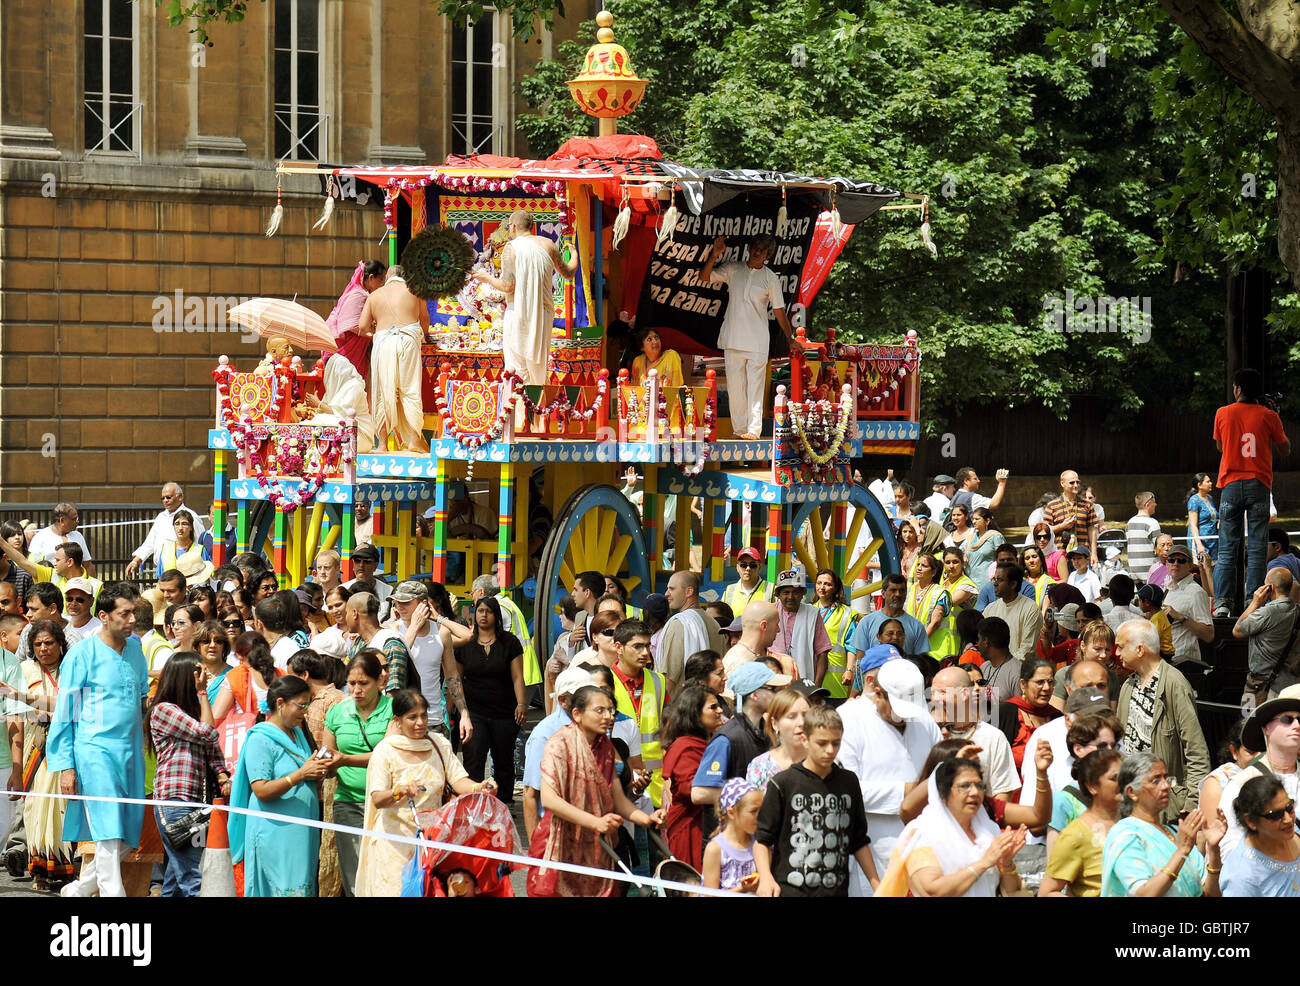 Une petite partie du grand groupe de fidèles Lièvre Krishna, aide à tirer trois grands sanctuaires décoratifs à roulettes, de Hyde Park à Trafalgar Square pour célébrer le festival 'Ratha-yatra'. Banque D'Images